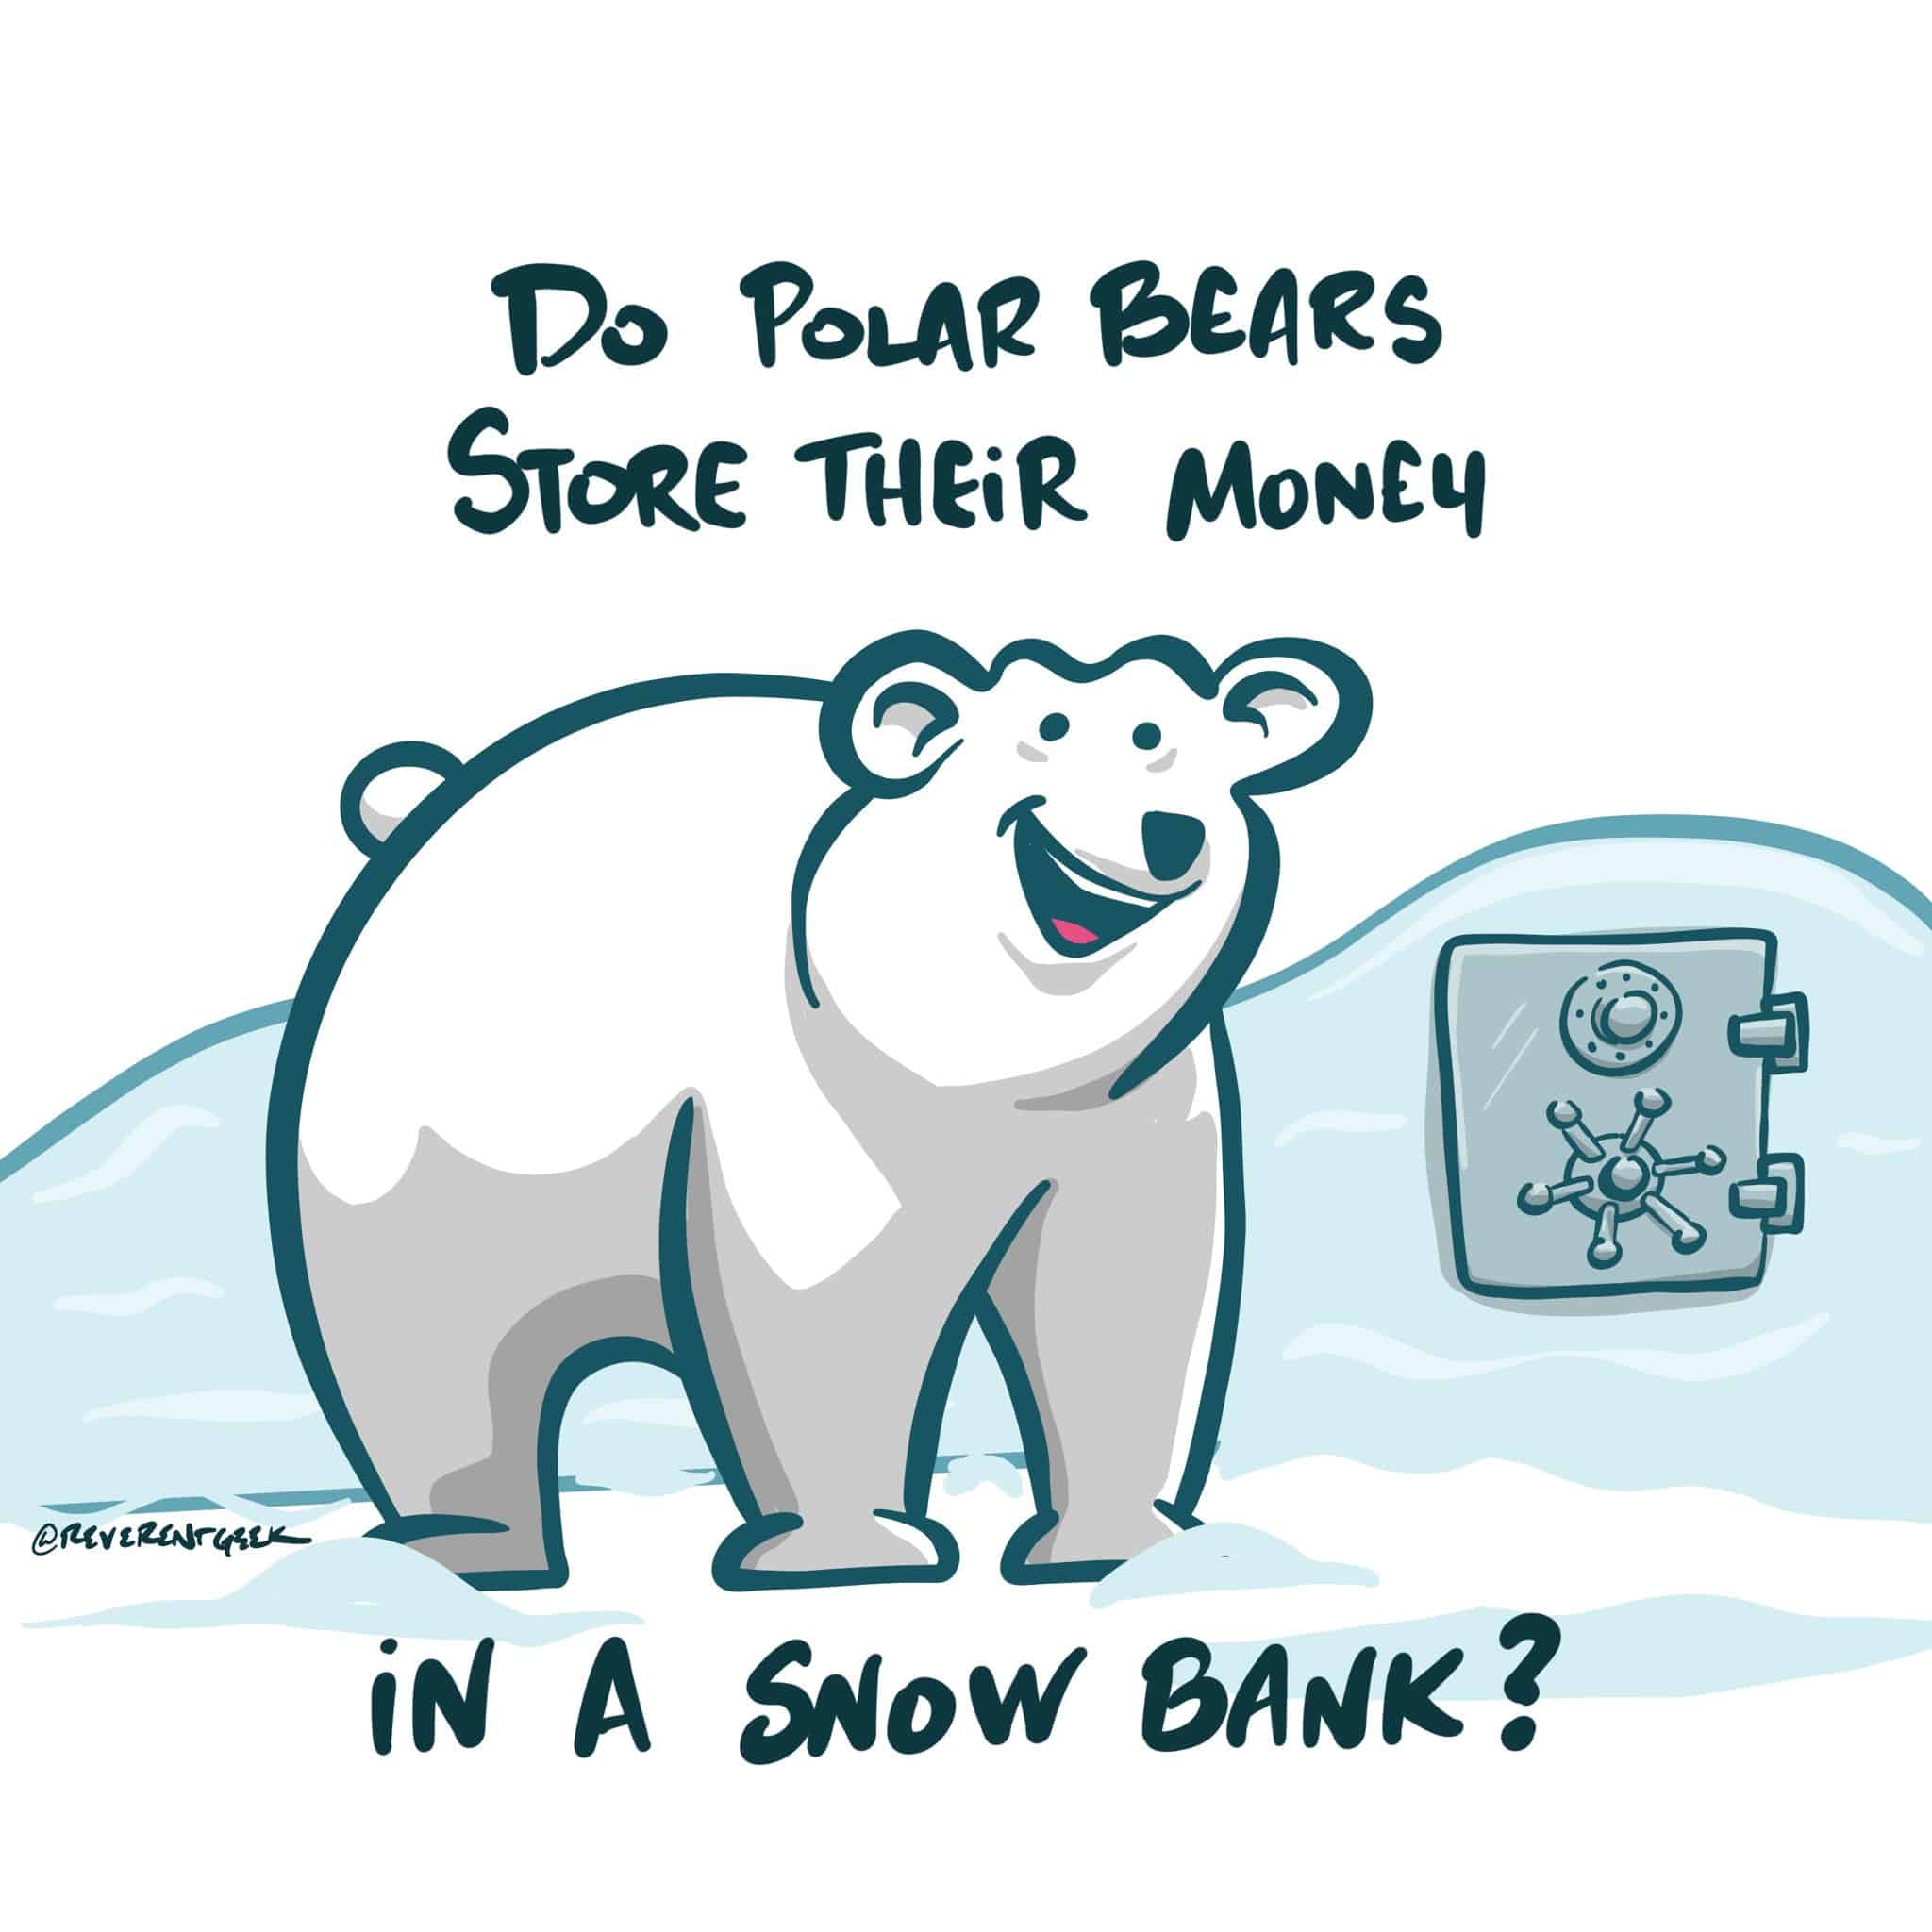 Where Do Polar Bears Keep Their Money?